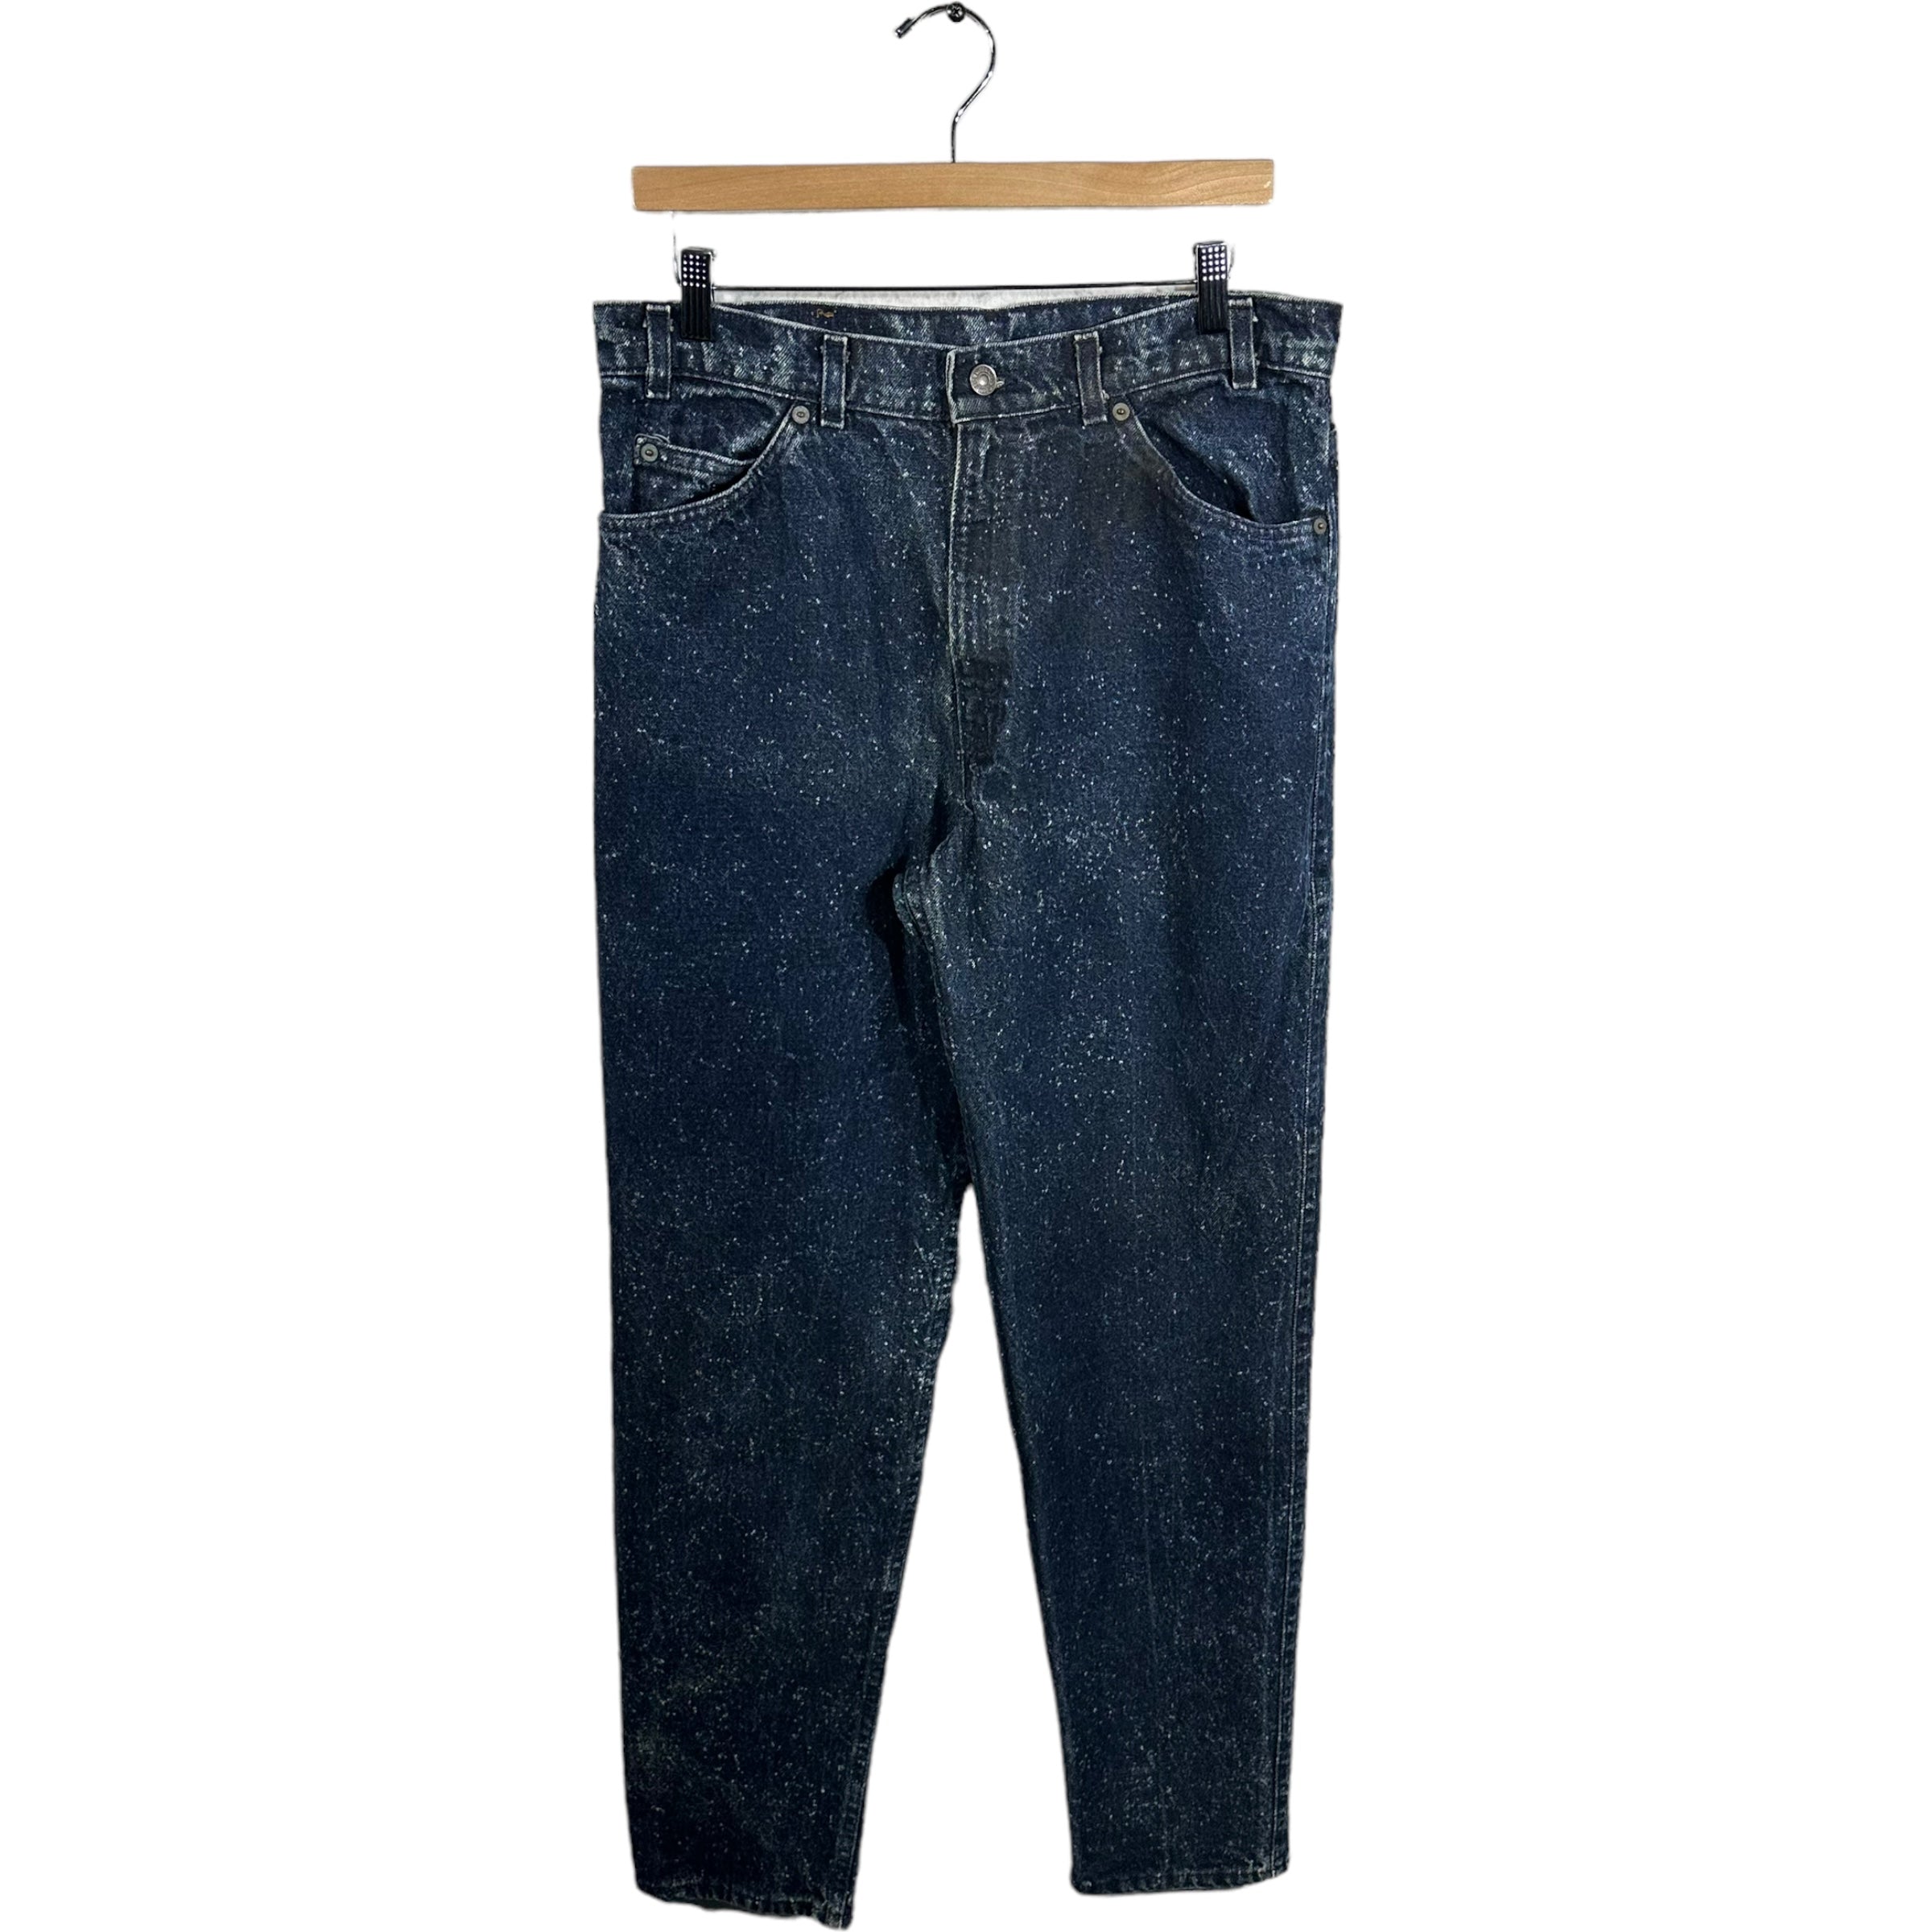 Vintage Levis Acid Washed Denim Jeans